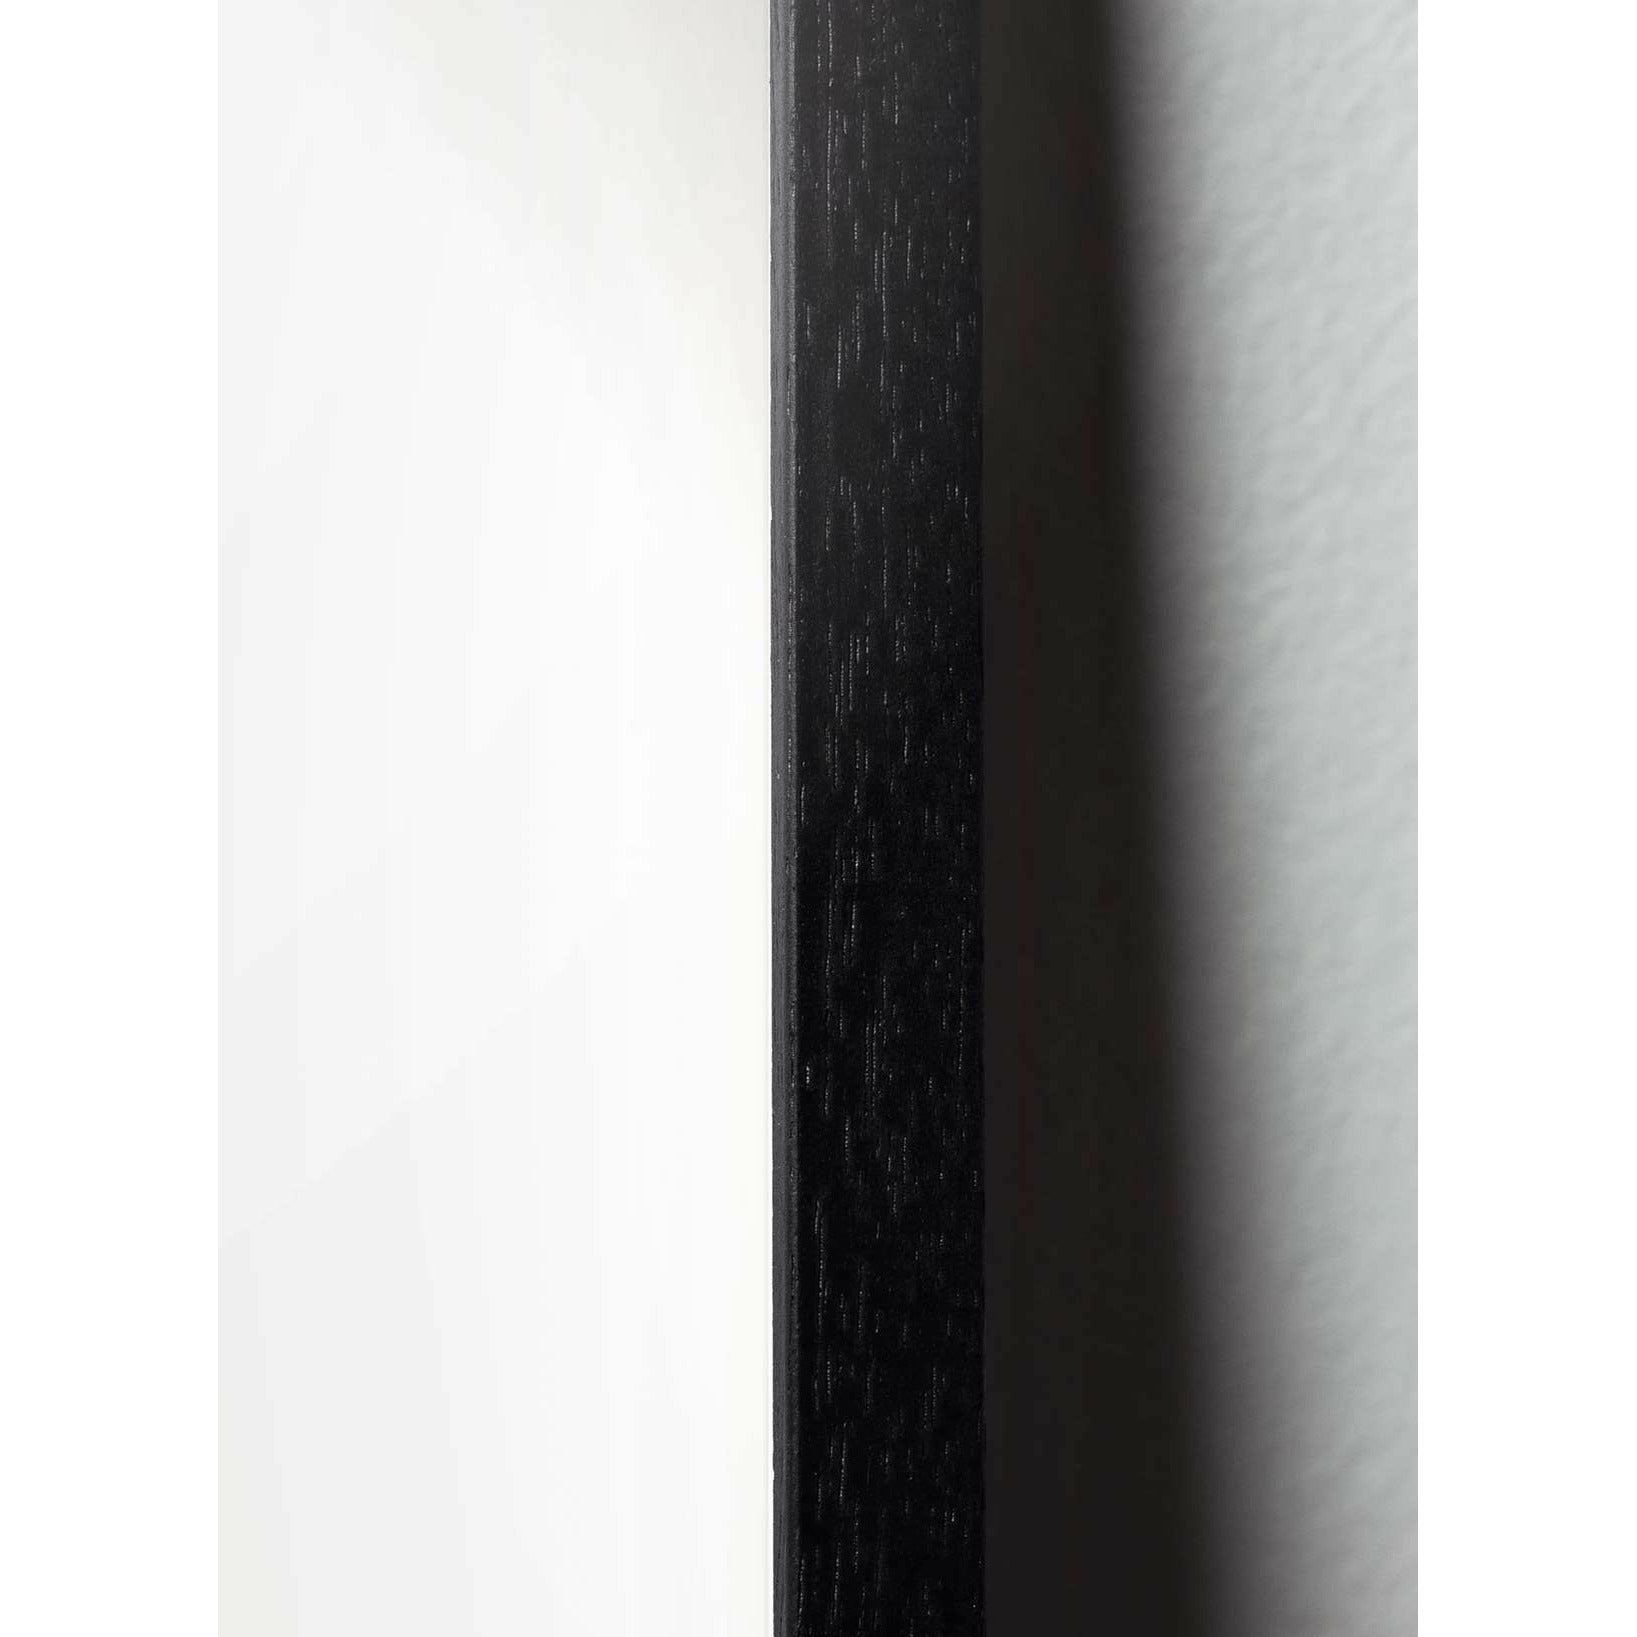 Brainchild Ägglinjeffisch, ram i svart målad trä A5, vit bakgrund